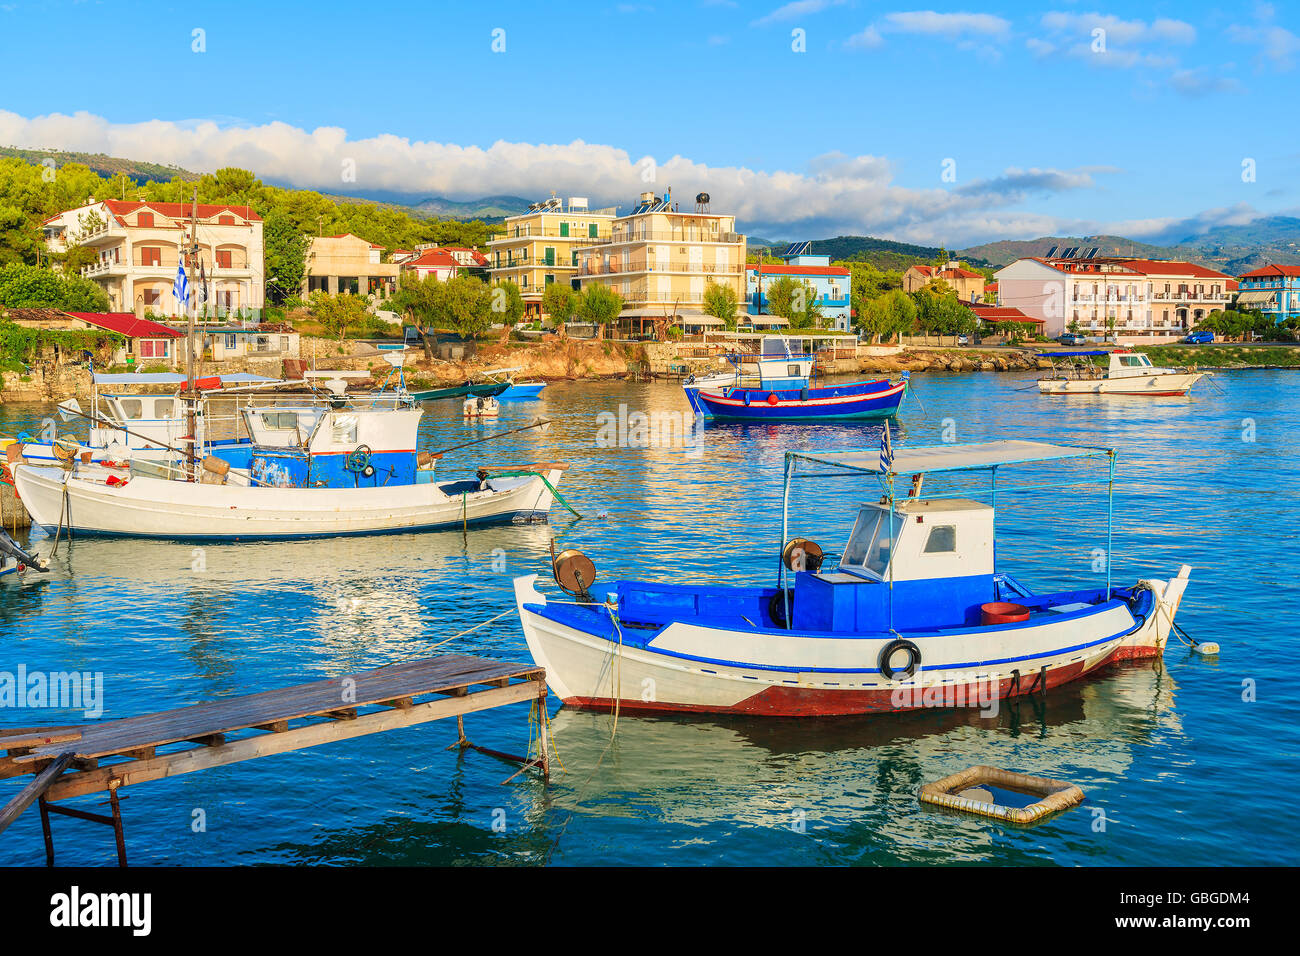 Griechischen Angelboote/Fischerboote bei Sonnenaufgang in kleiner Hafen, Insel Samos, Griechenland Stockfoto